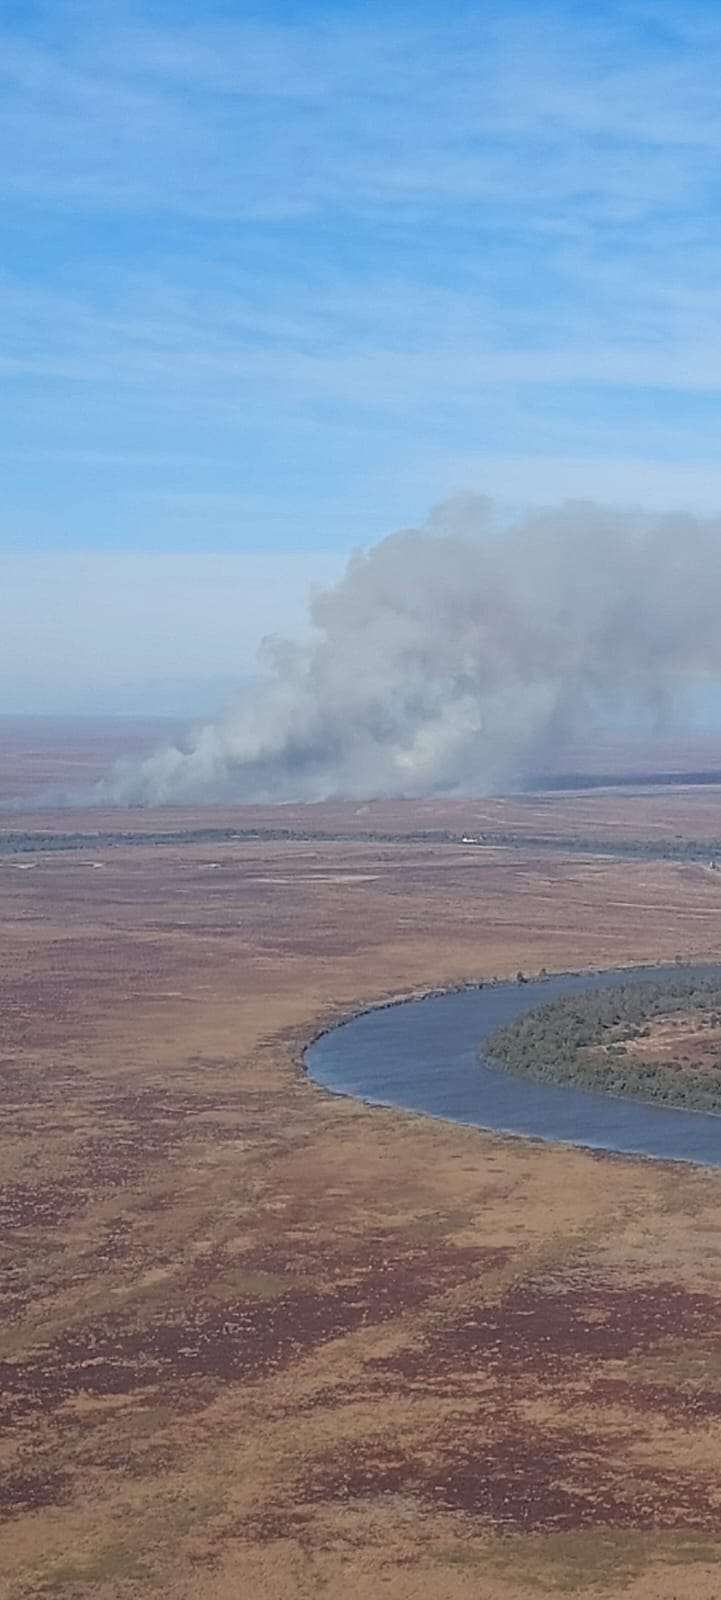 Se registran focos de incendios forestales activos en Entre Ríos y San Luis